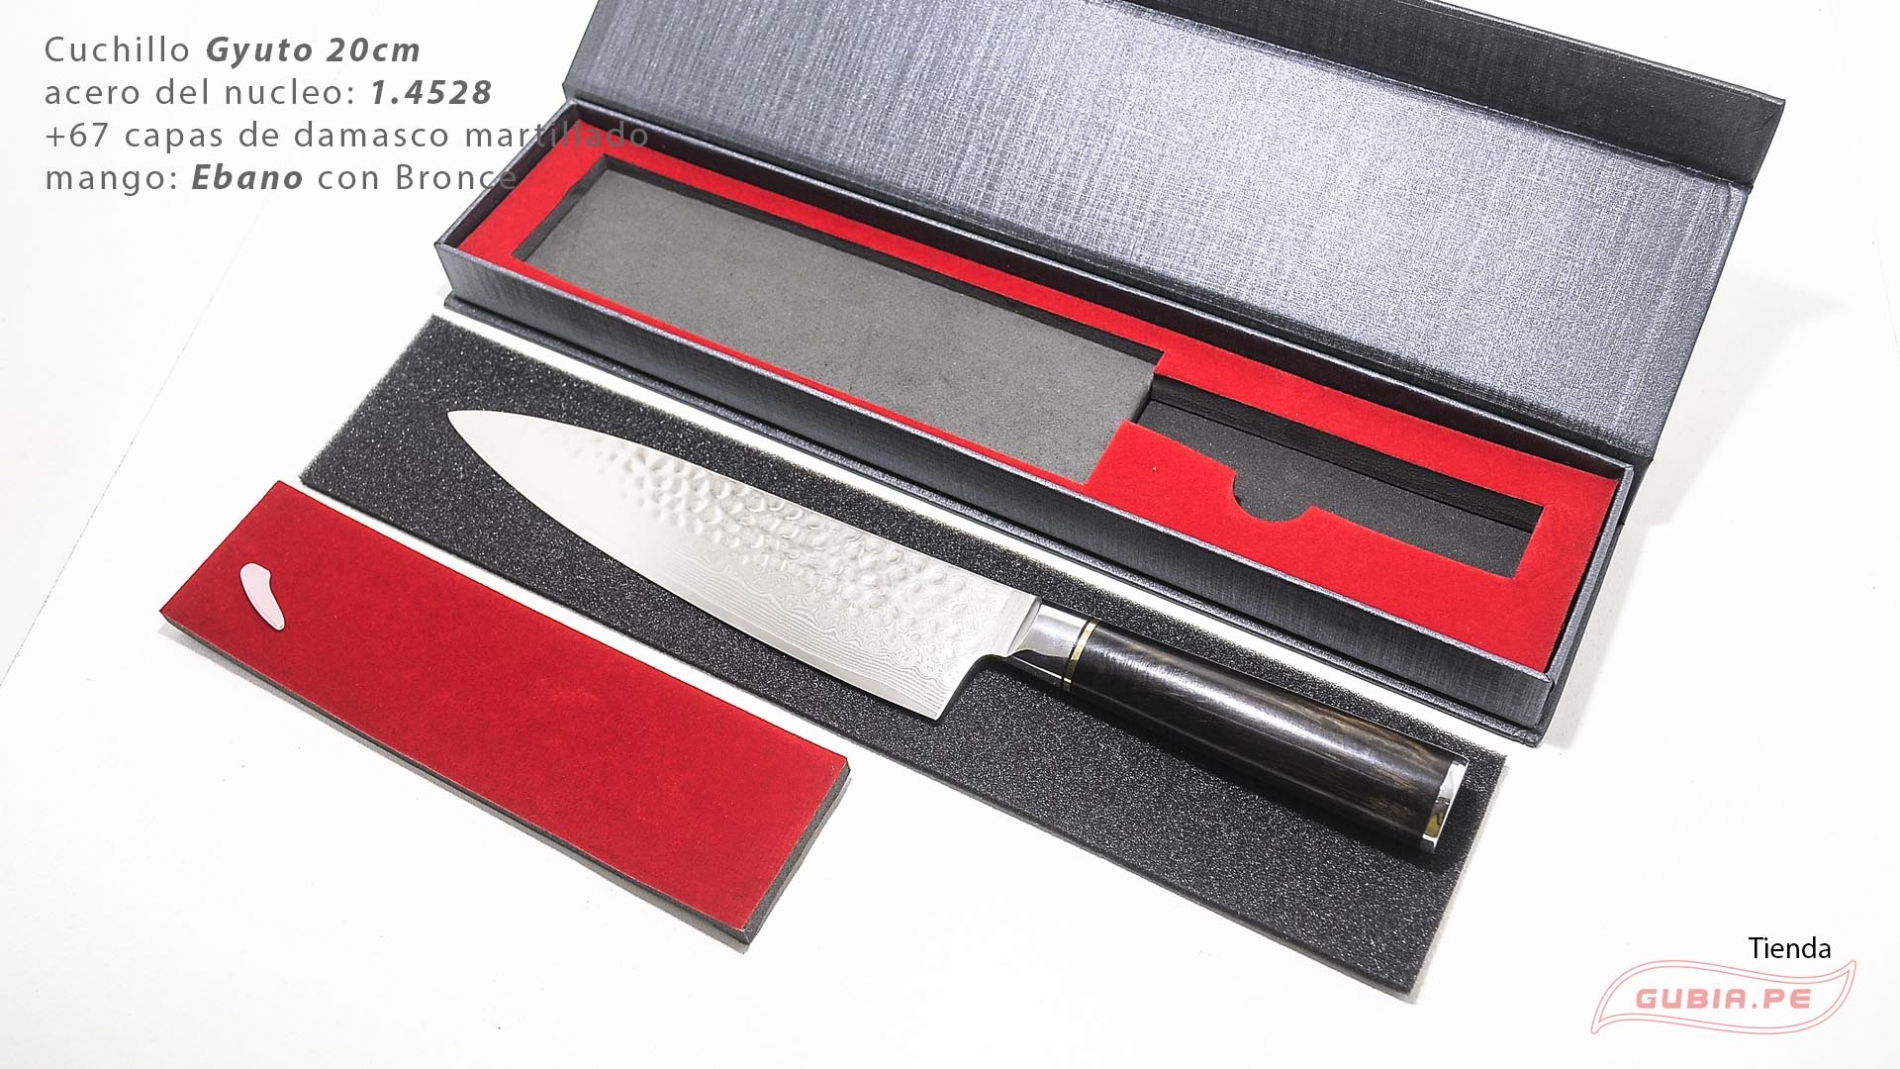 B1zEg20-Cuchillo Gyuto 20cm acero 10Cr+damasco martillado 67capas Ebano+Bronce B1zEg20-max-8.